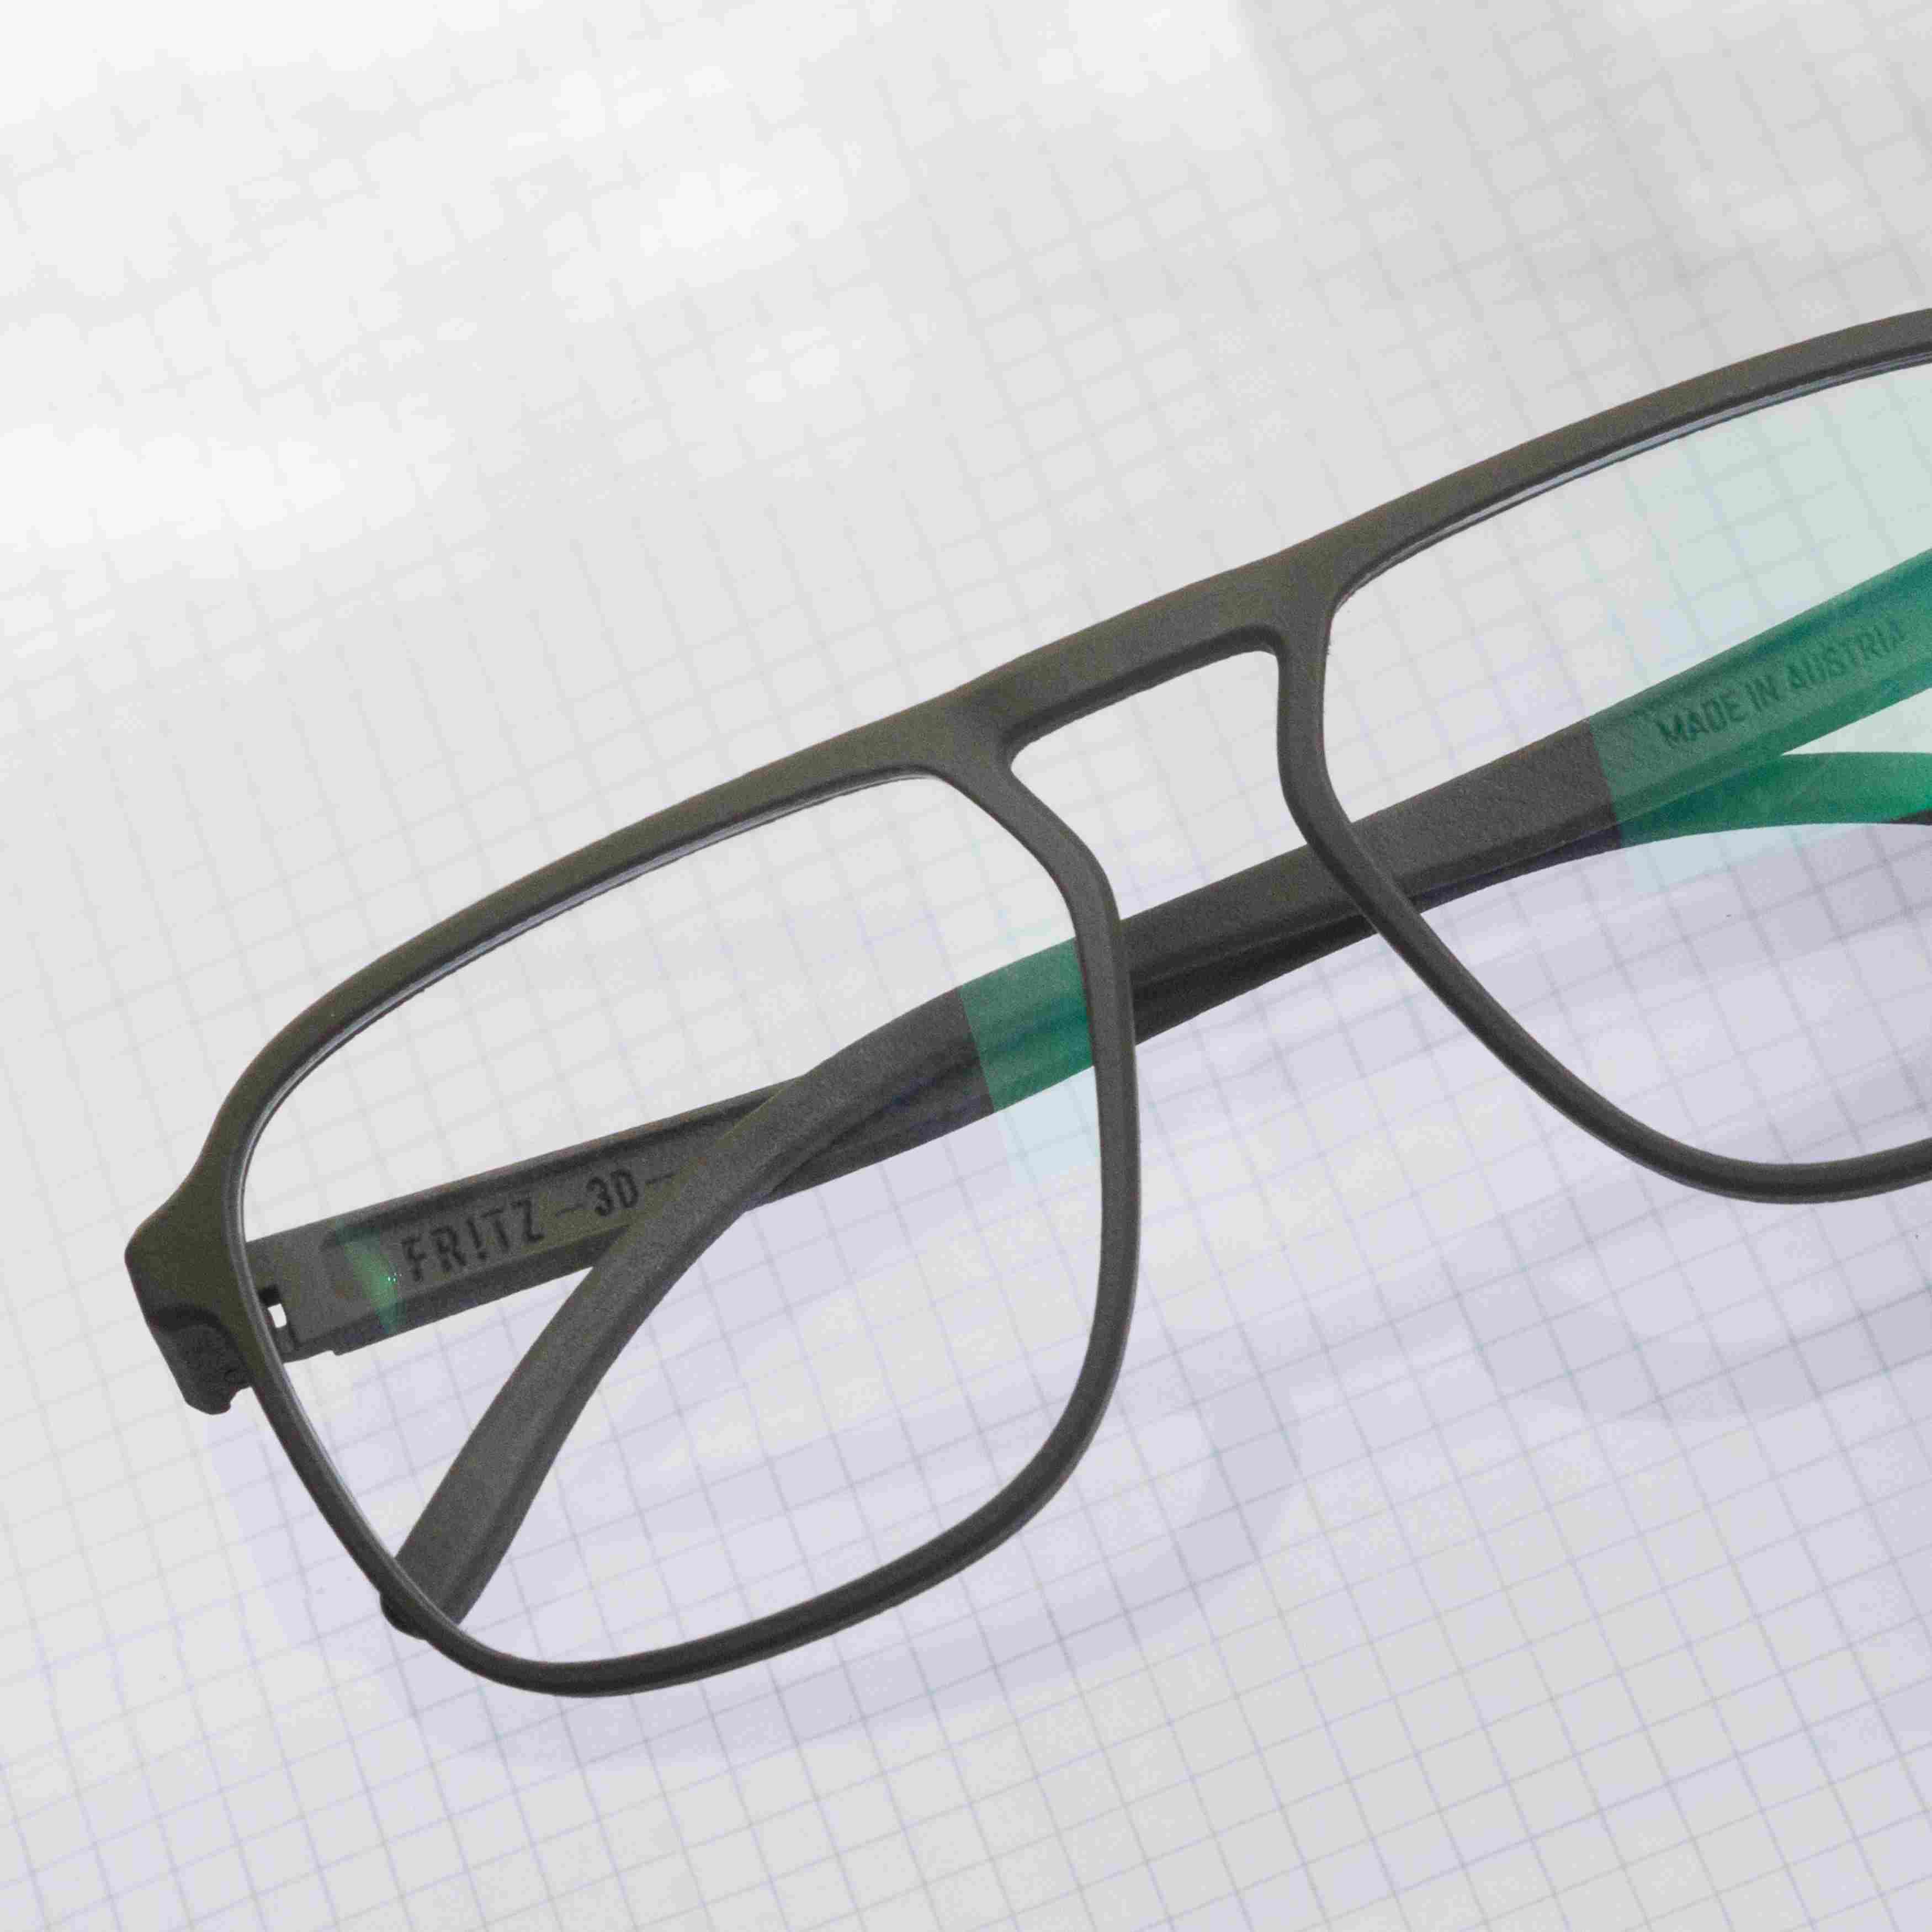 infactory Bildschirmbrille: Augenschonende Bildschirm-Brille mit  Blaulicht-Filter, 1,5 Dioptrien (Bildschirmbrille ohne Stärke, Lesebrille  Blaufilter